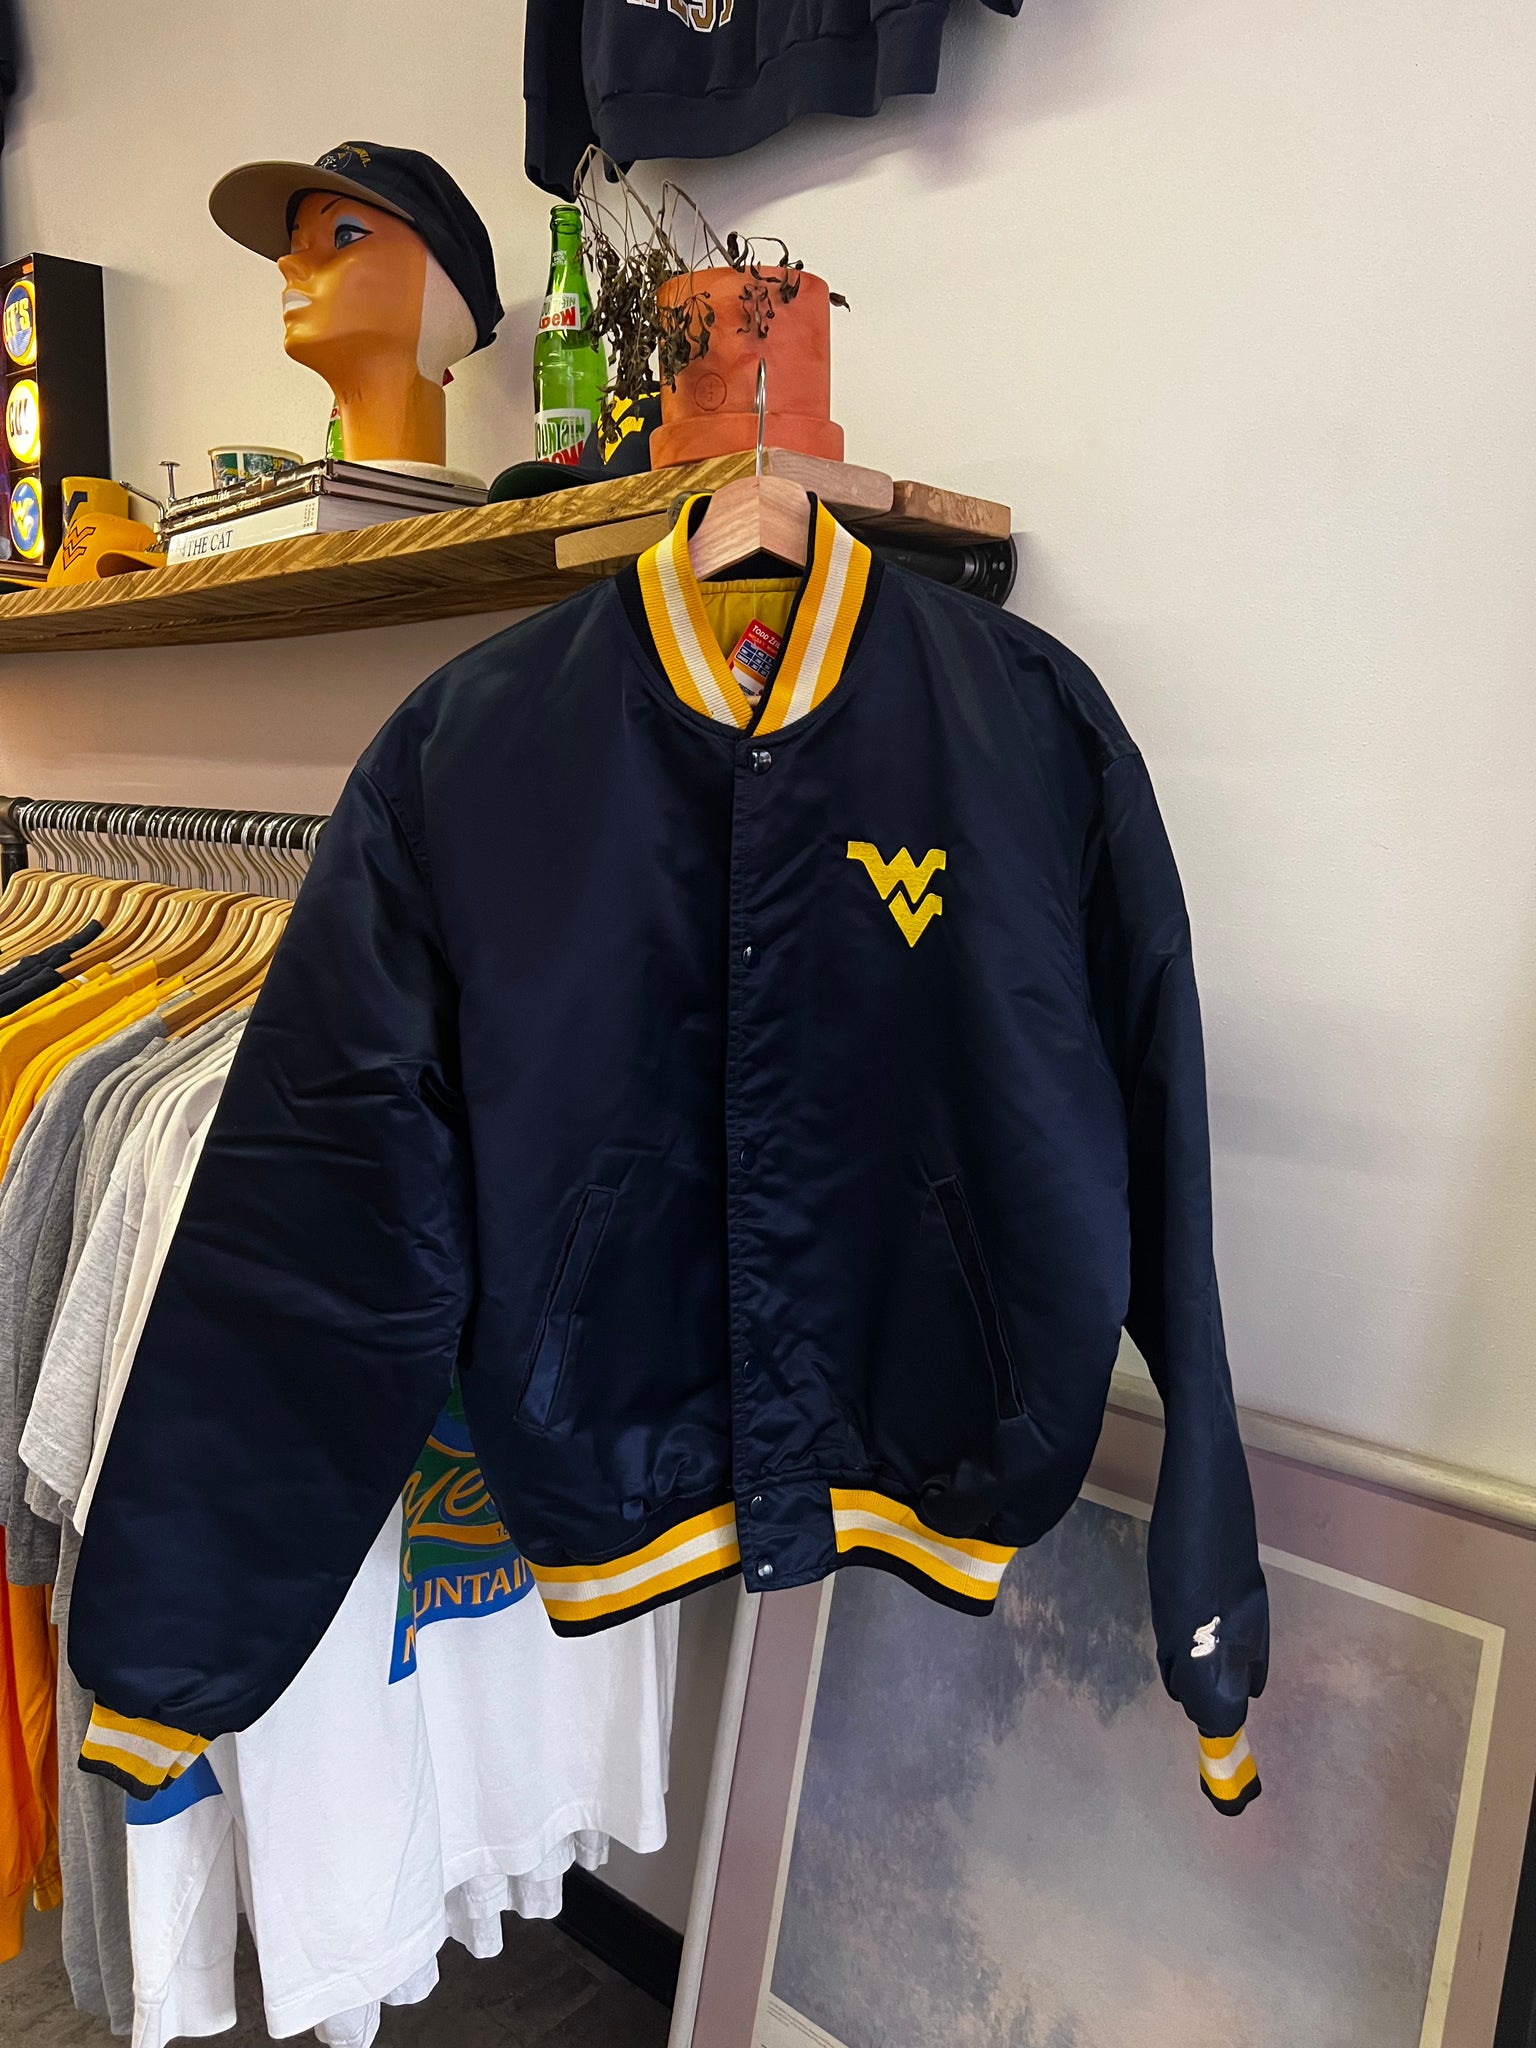 Vintage 80s WVU Embroidered Logo Starter Satin Jacket